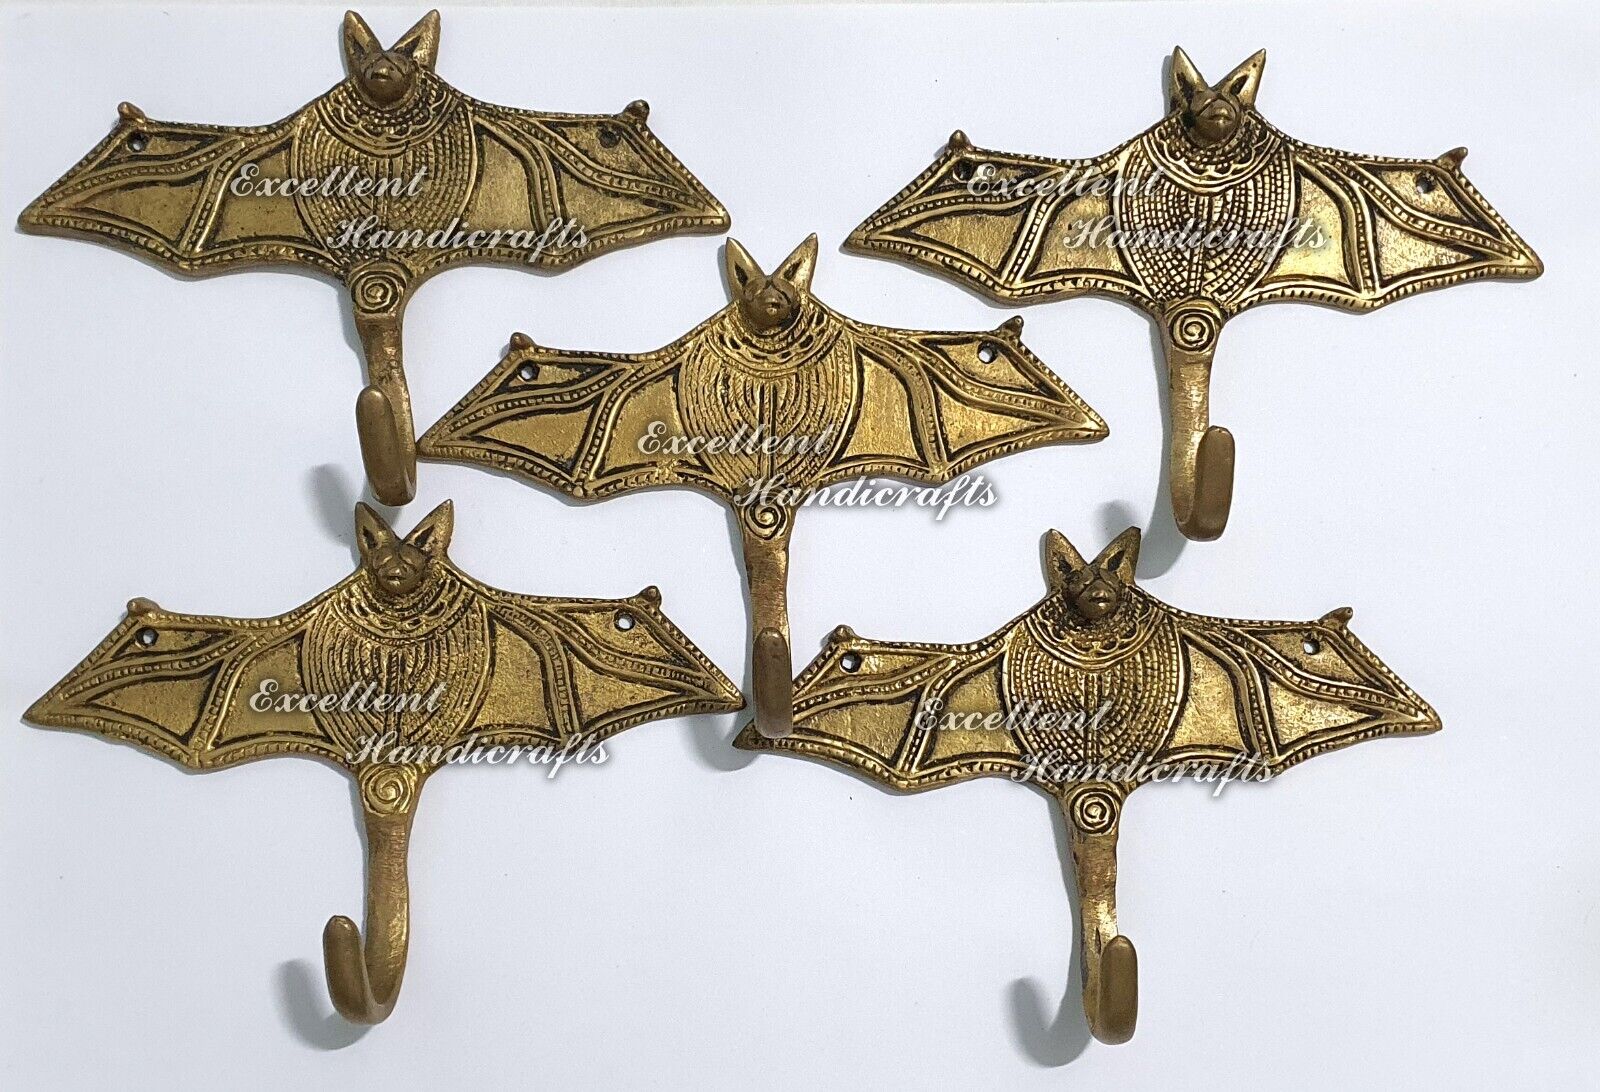 5 Attractive Antique Vintage Style Brass made Bat Design Coat Hooks Key Holder